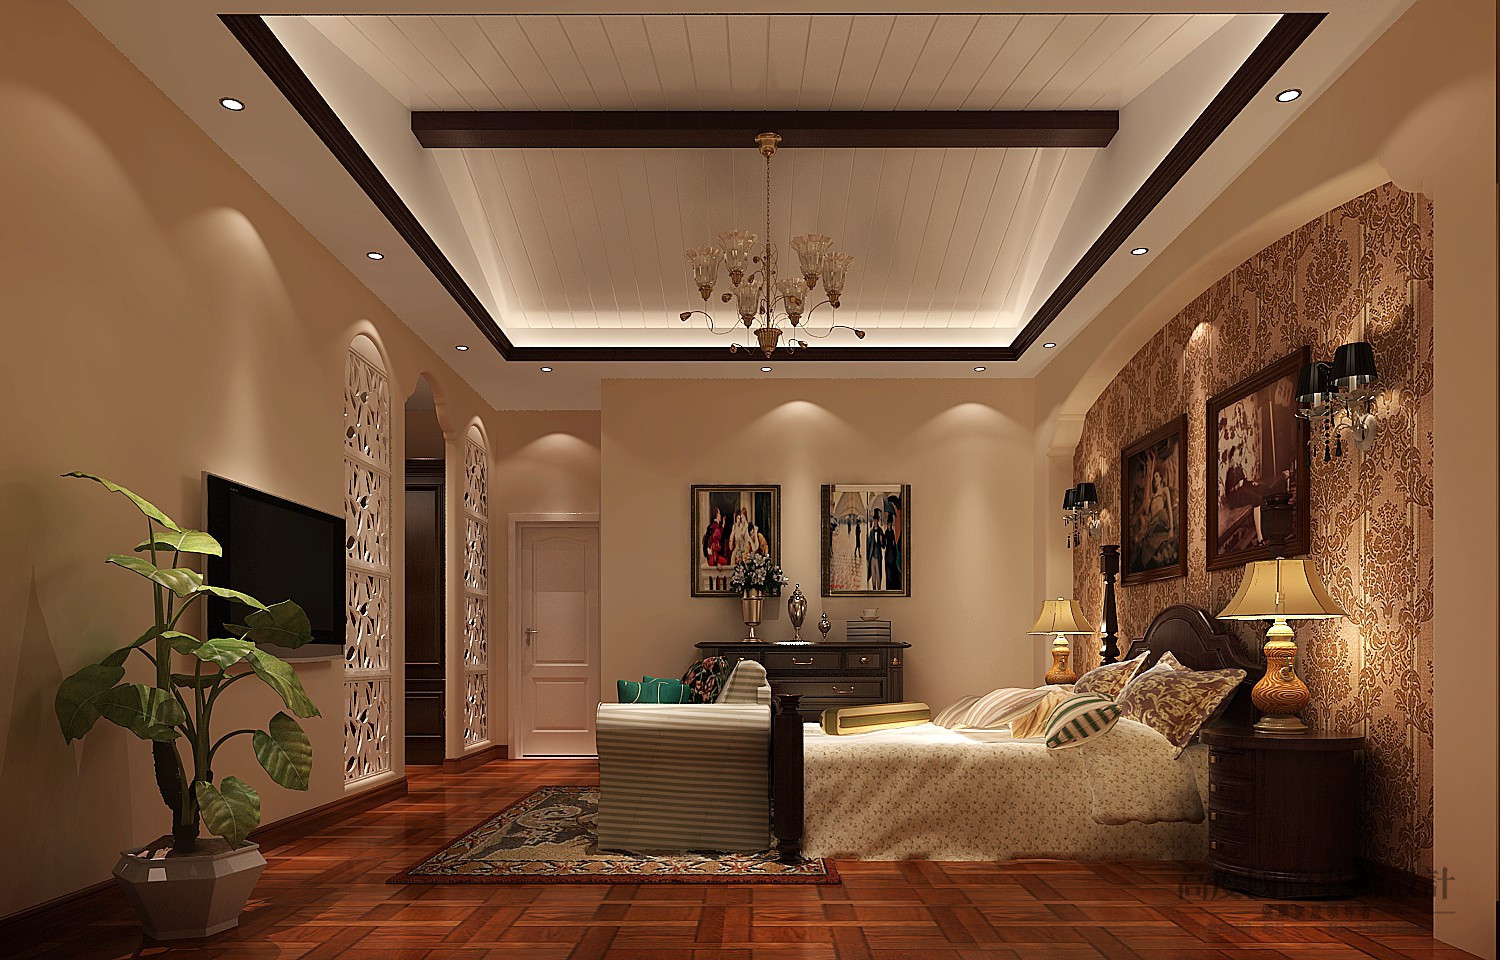 别墅 托斯卡纳 效果图 设计案例 卧室图片来自高度国际设计装饰在阿凯笛亚托斯卡纳设计案例的分享